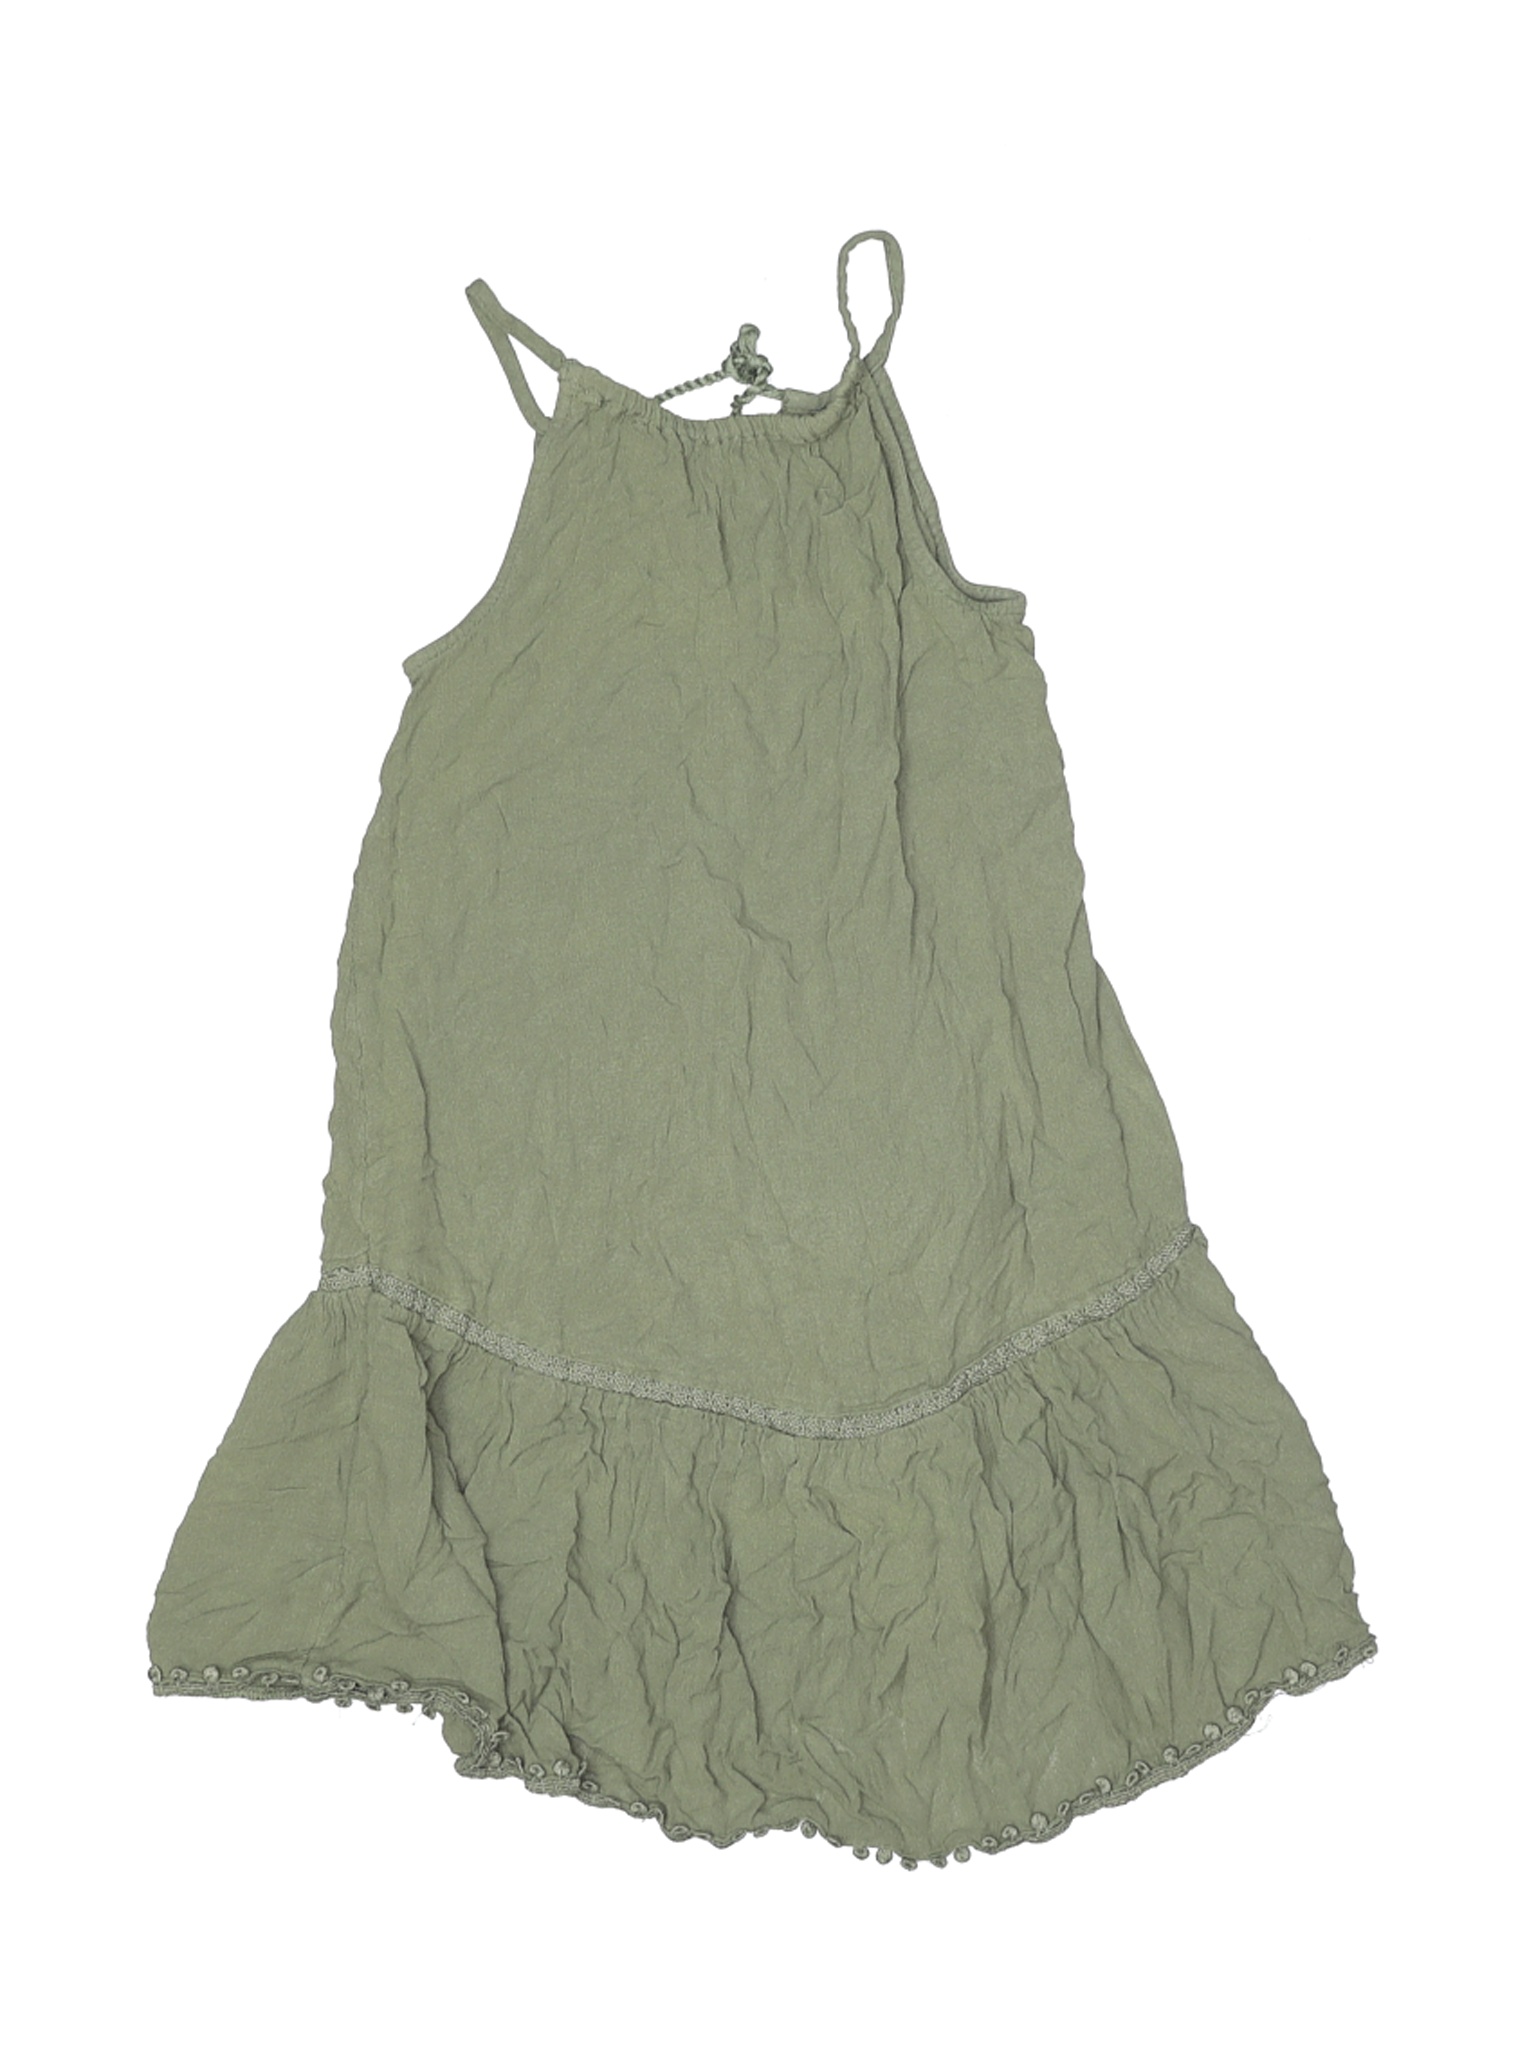 Old Navy Girls Green Dress 6 | eBay